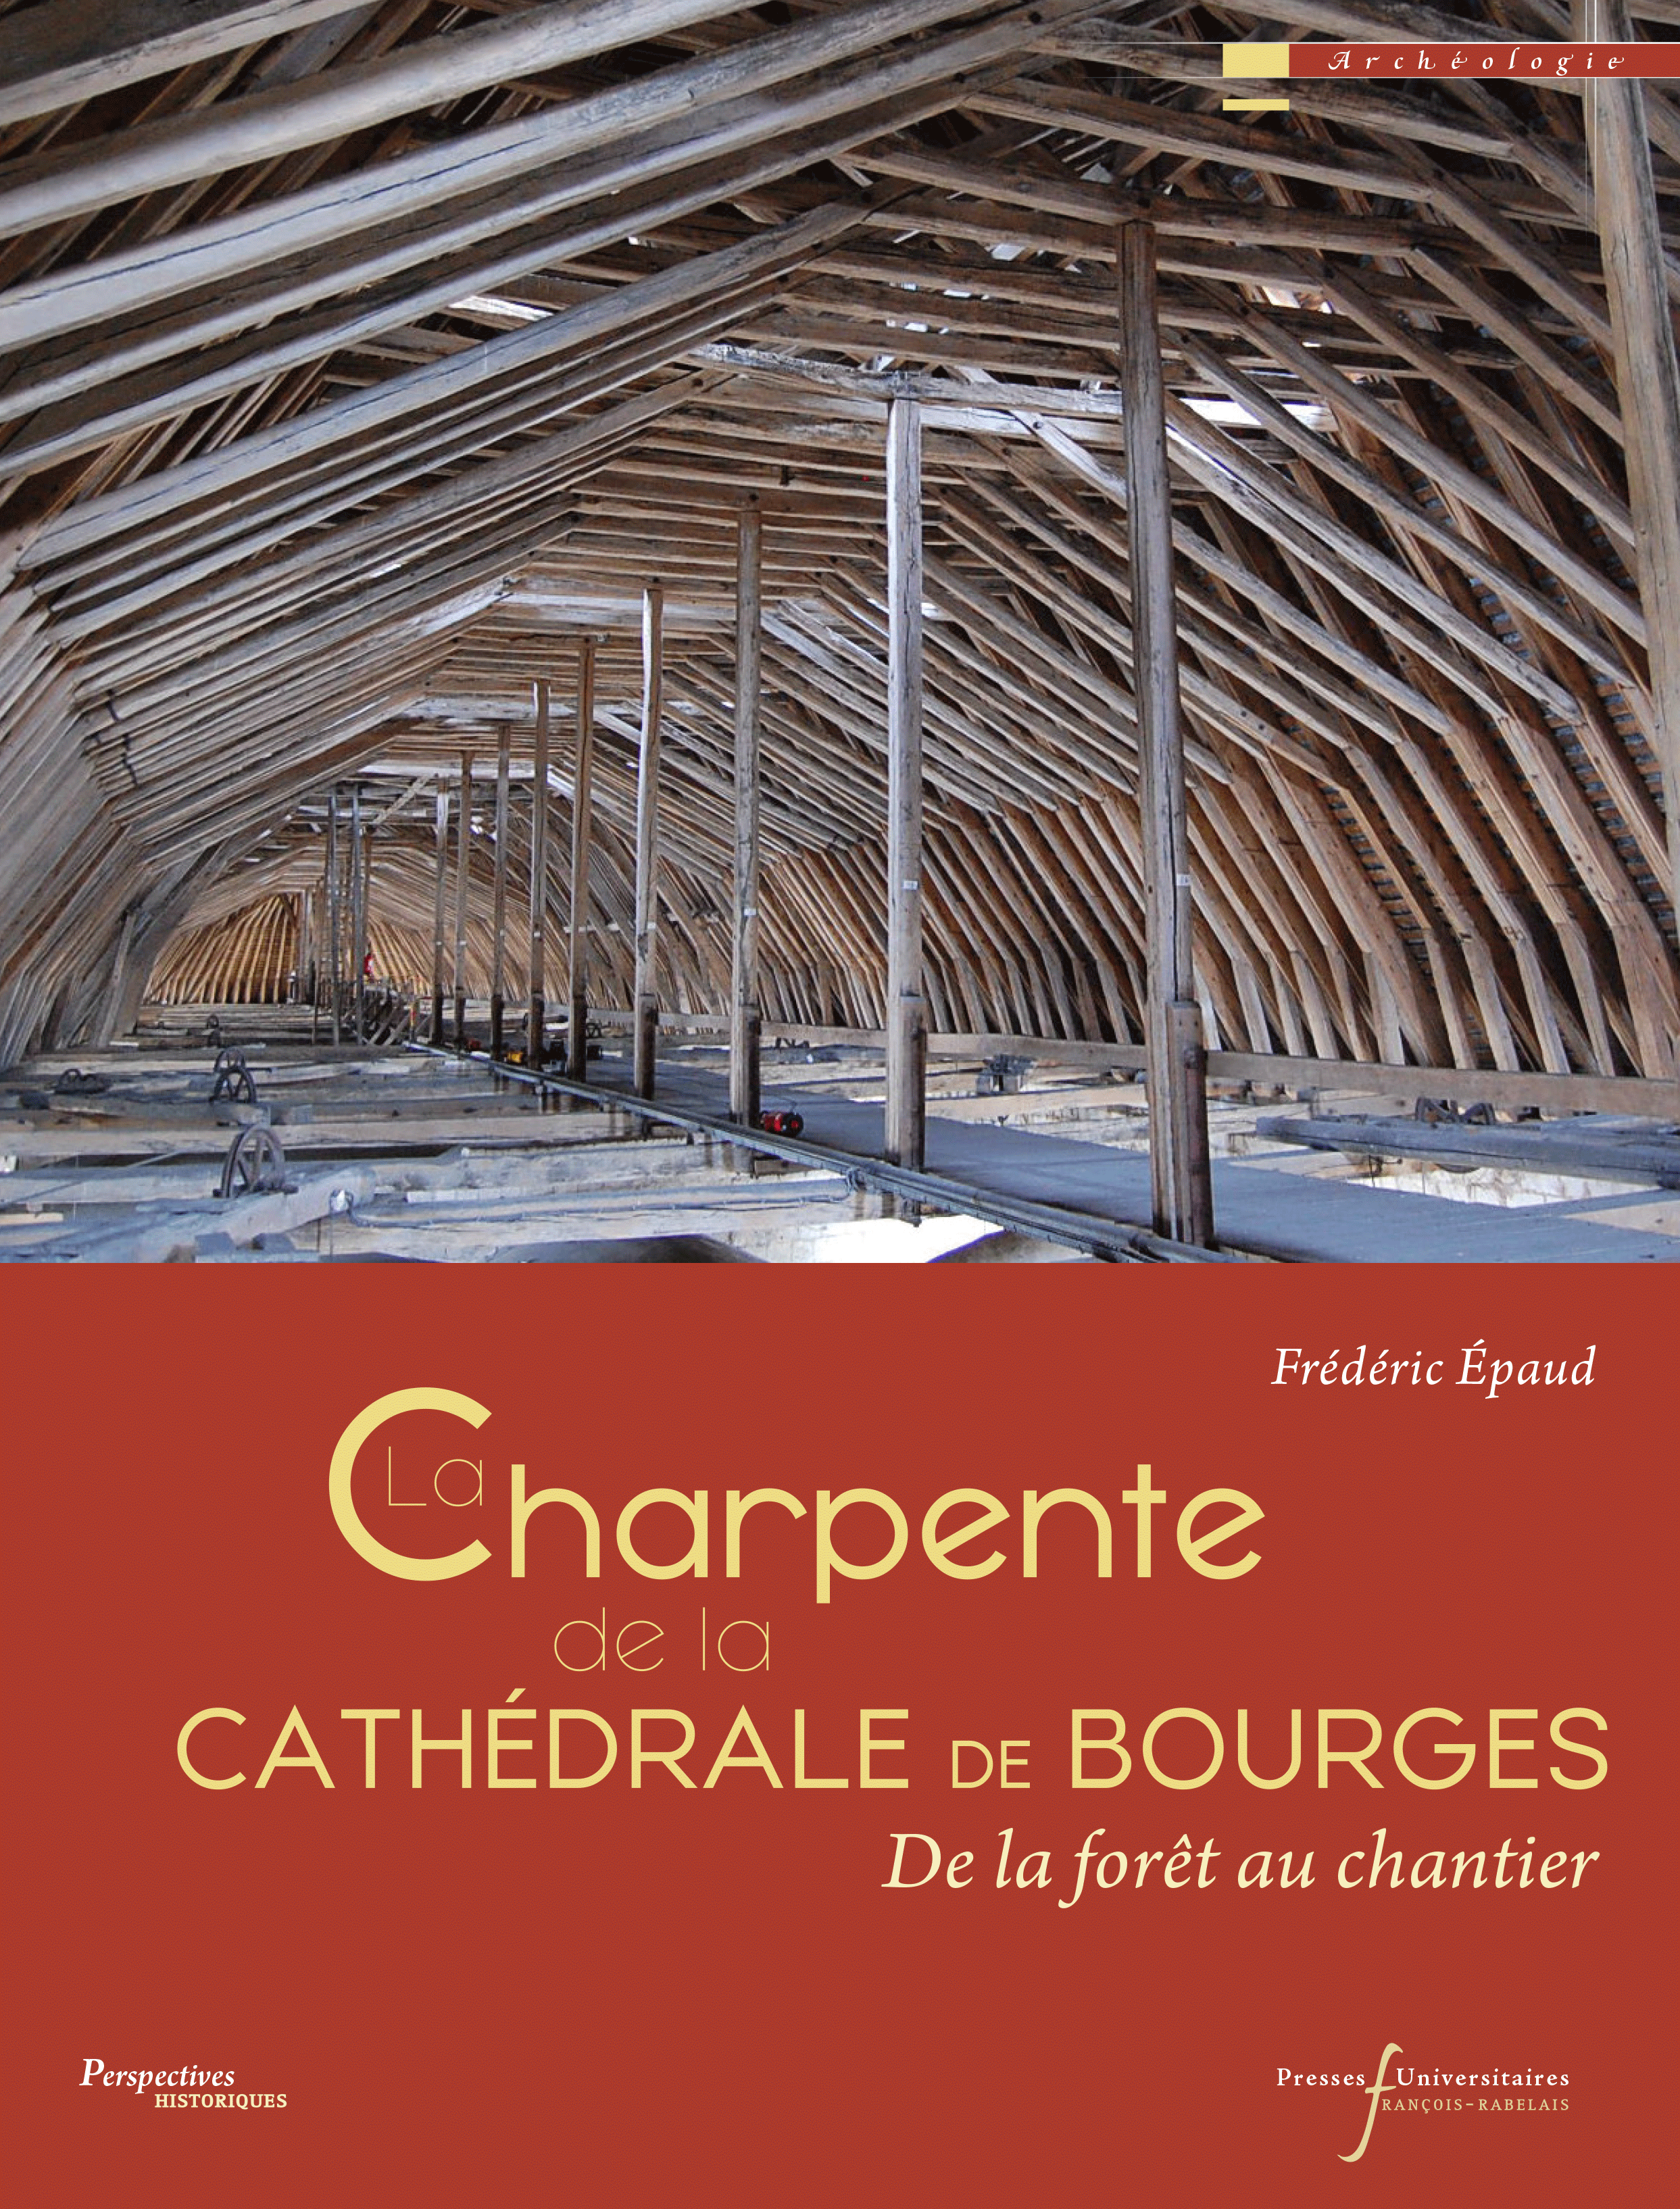 La charpente de la cathédrale de Bourges